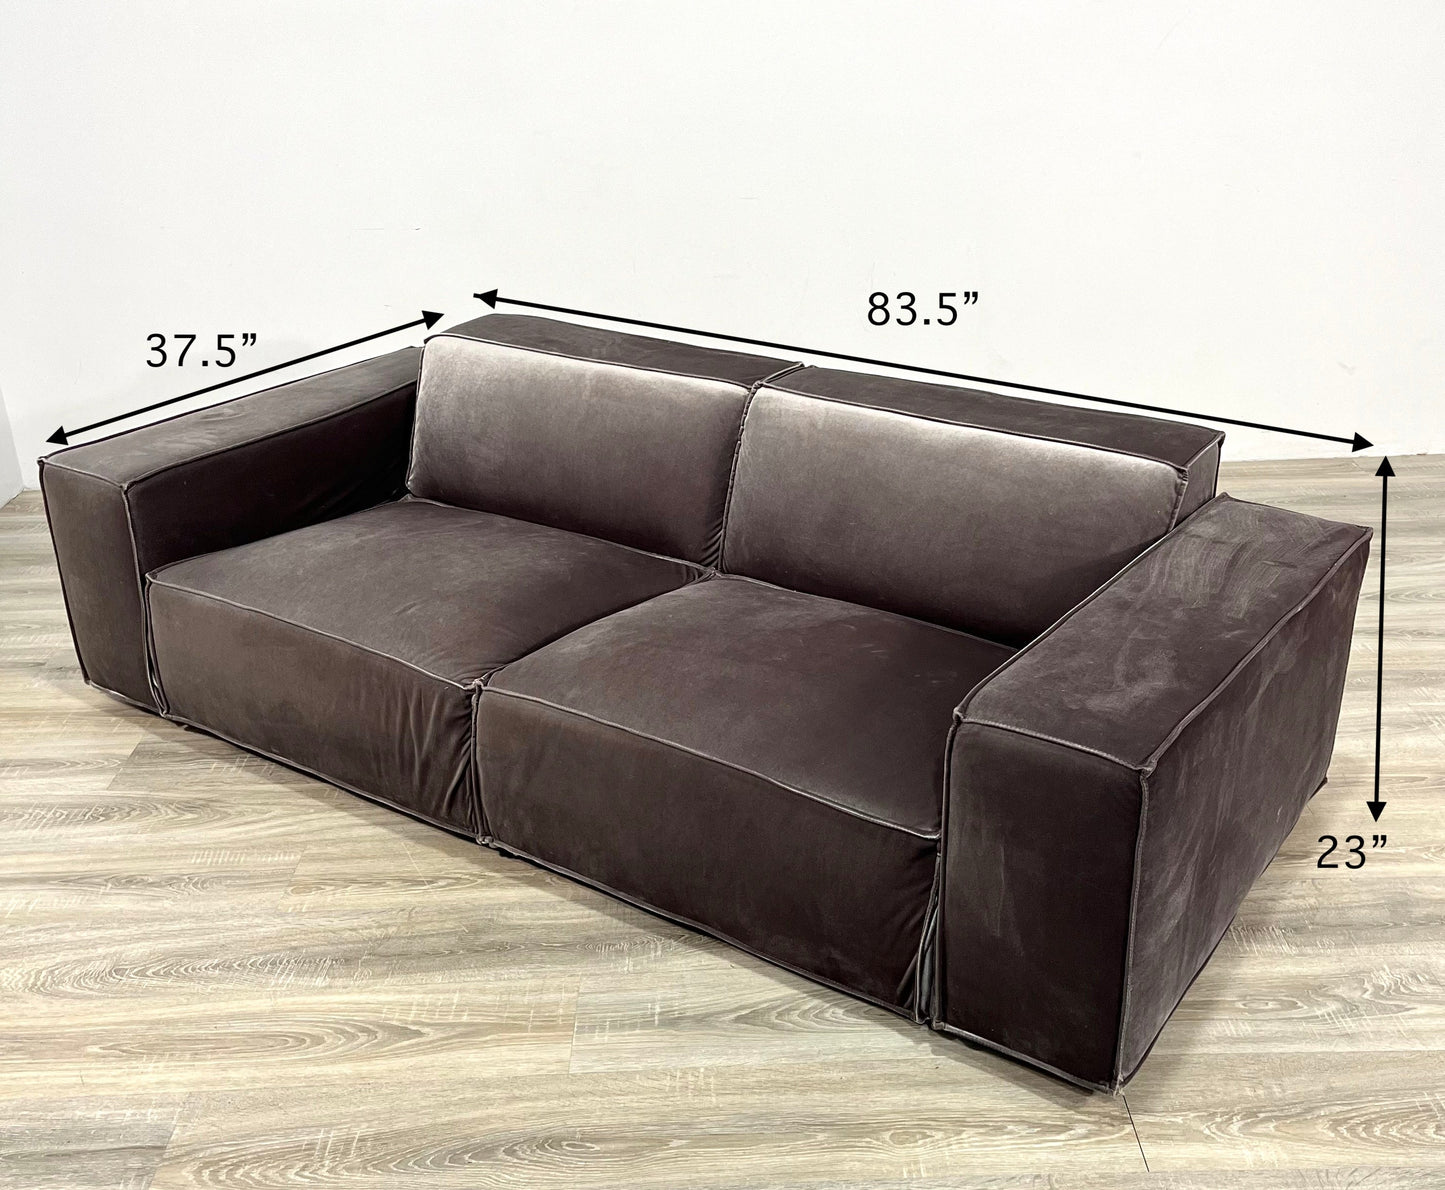 The Porter Sofa